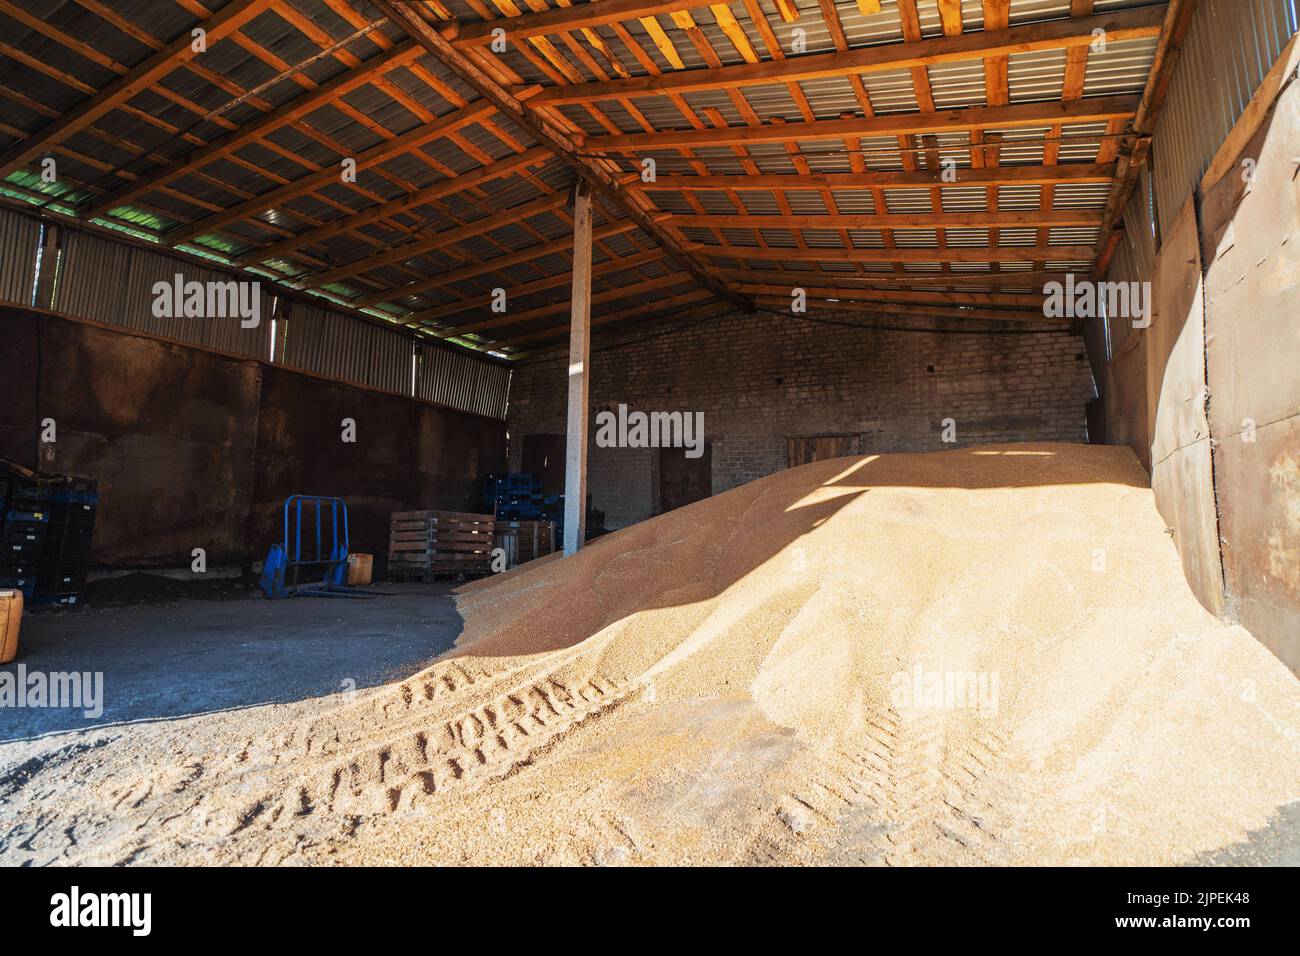 Getreide im Lagerhaus Kornspeicher innen mit einem Haufen rohen Weizens. Landwirtschaft. Stockfoto